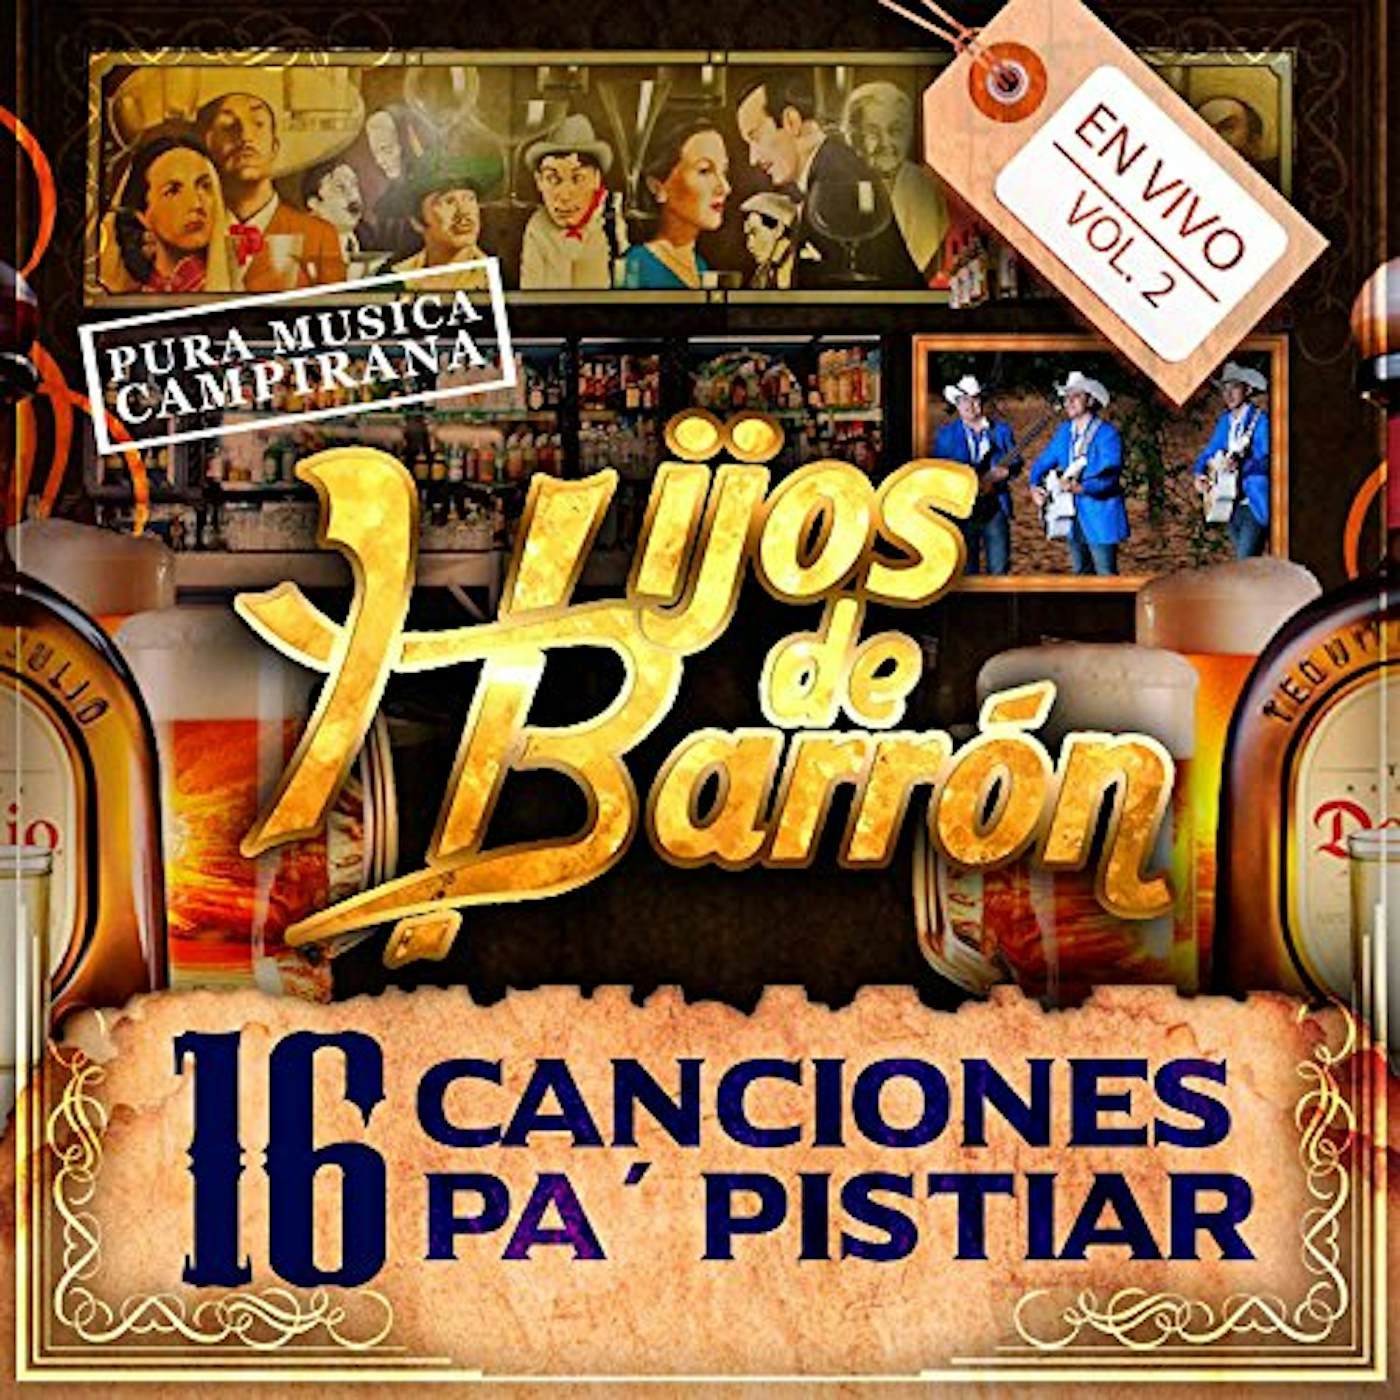 Hijos De Barron 16 CANCIONES PA PISTIAR CD